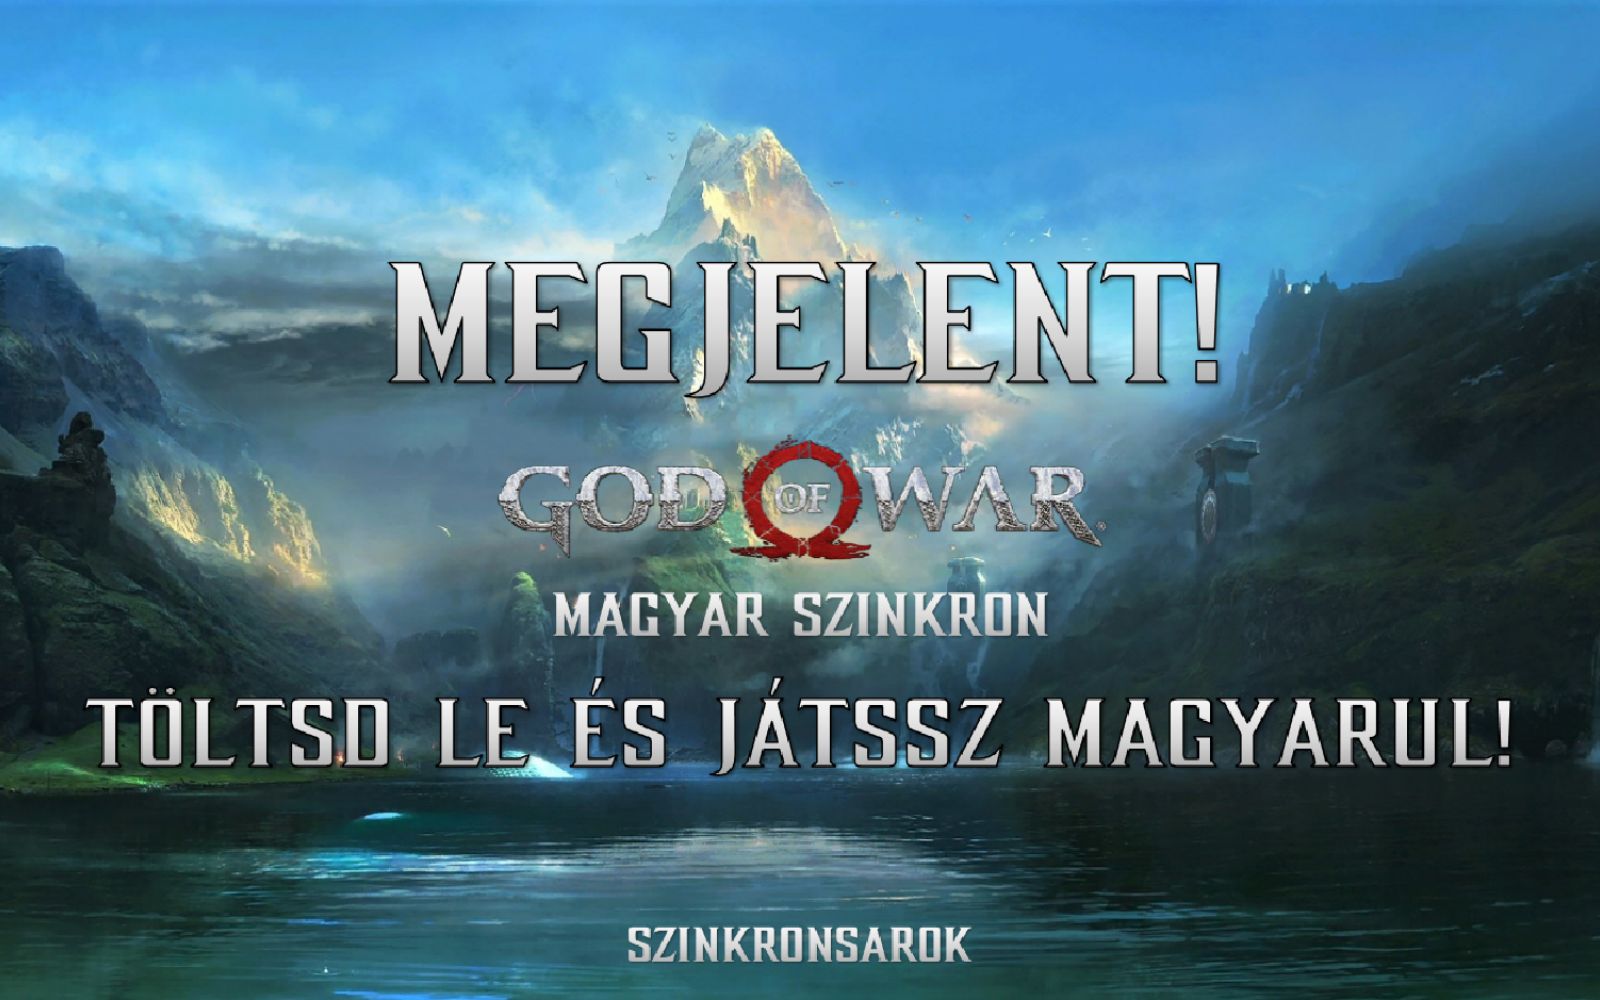 Megjelent a God of War magyar szinkronja